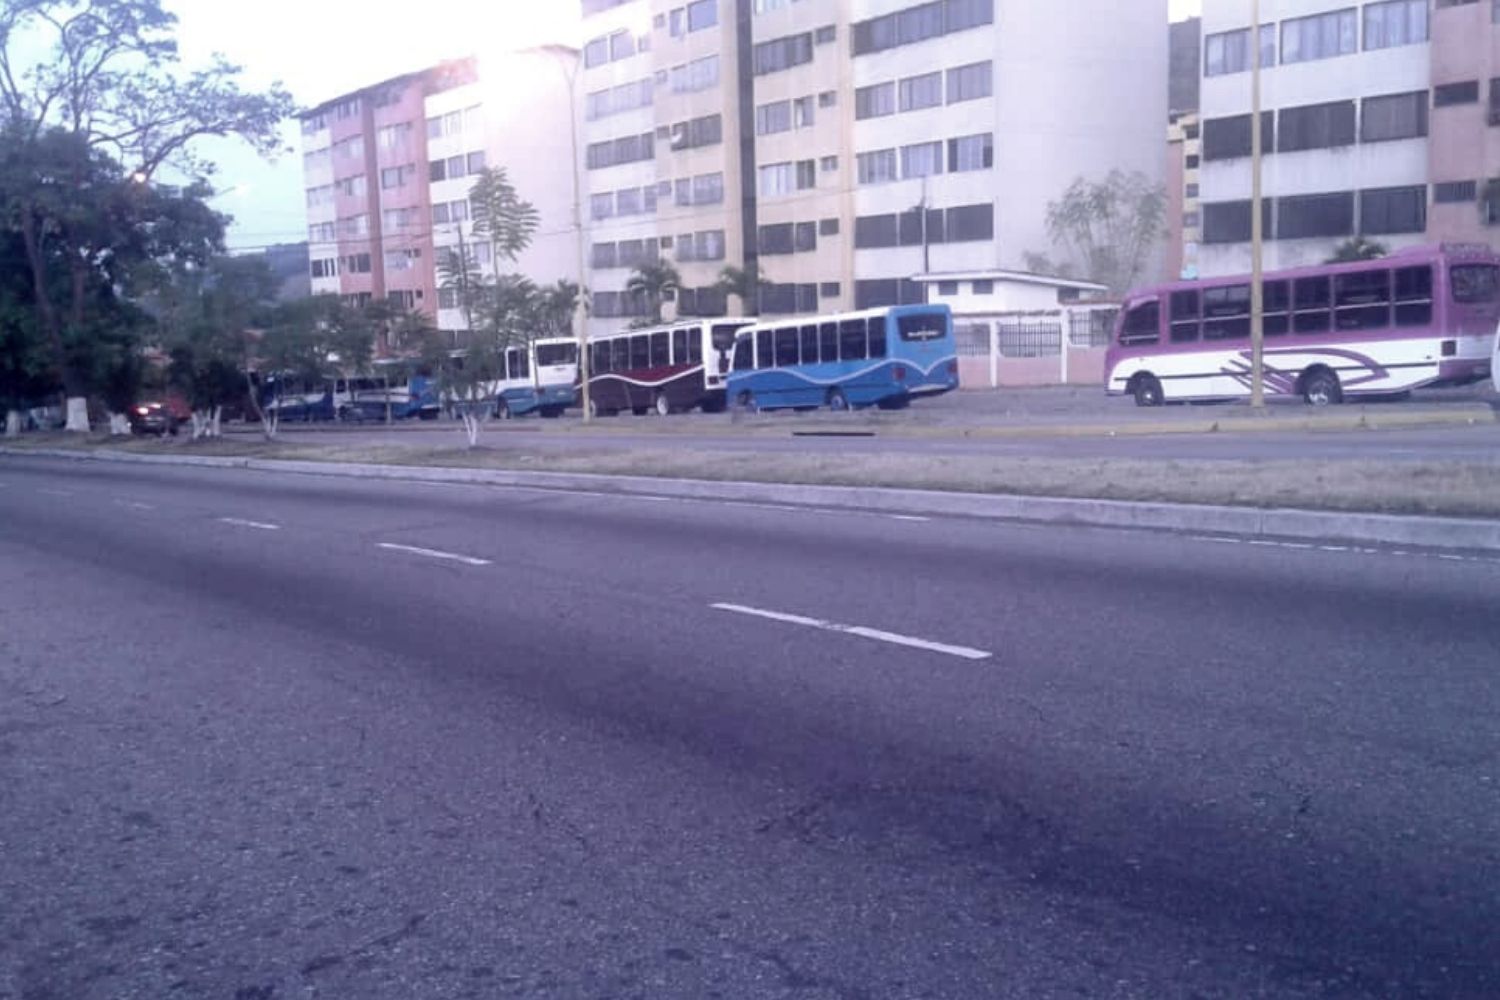 Calles vacías: El transporte público en Mérida prácticamente paralizado #20Dic (fotos)